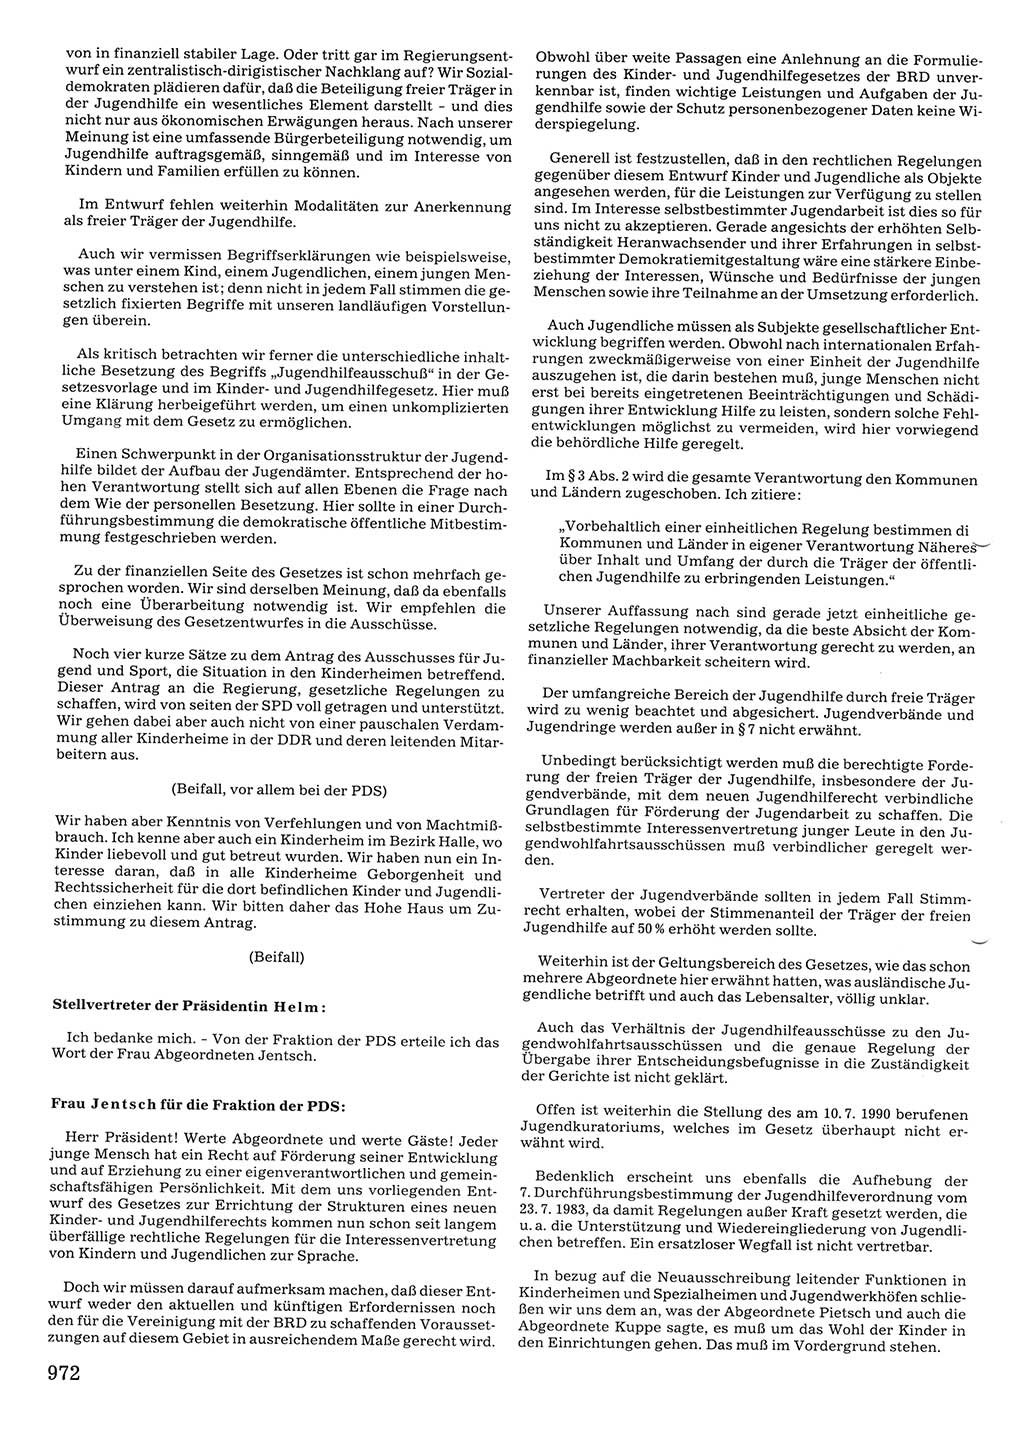 Tagungen der Volkskammer (VK) der Deutschen Demokratischen Republik (DDR), 10. Wahlperiode 1990, Seite 972 (VK. DDR 10. WP. 1990, Prot. Tg. 1-38, 5.4.-2.10.1990, S. 972)